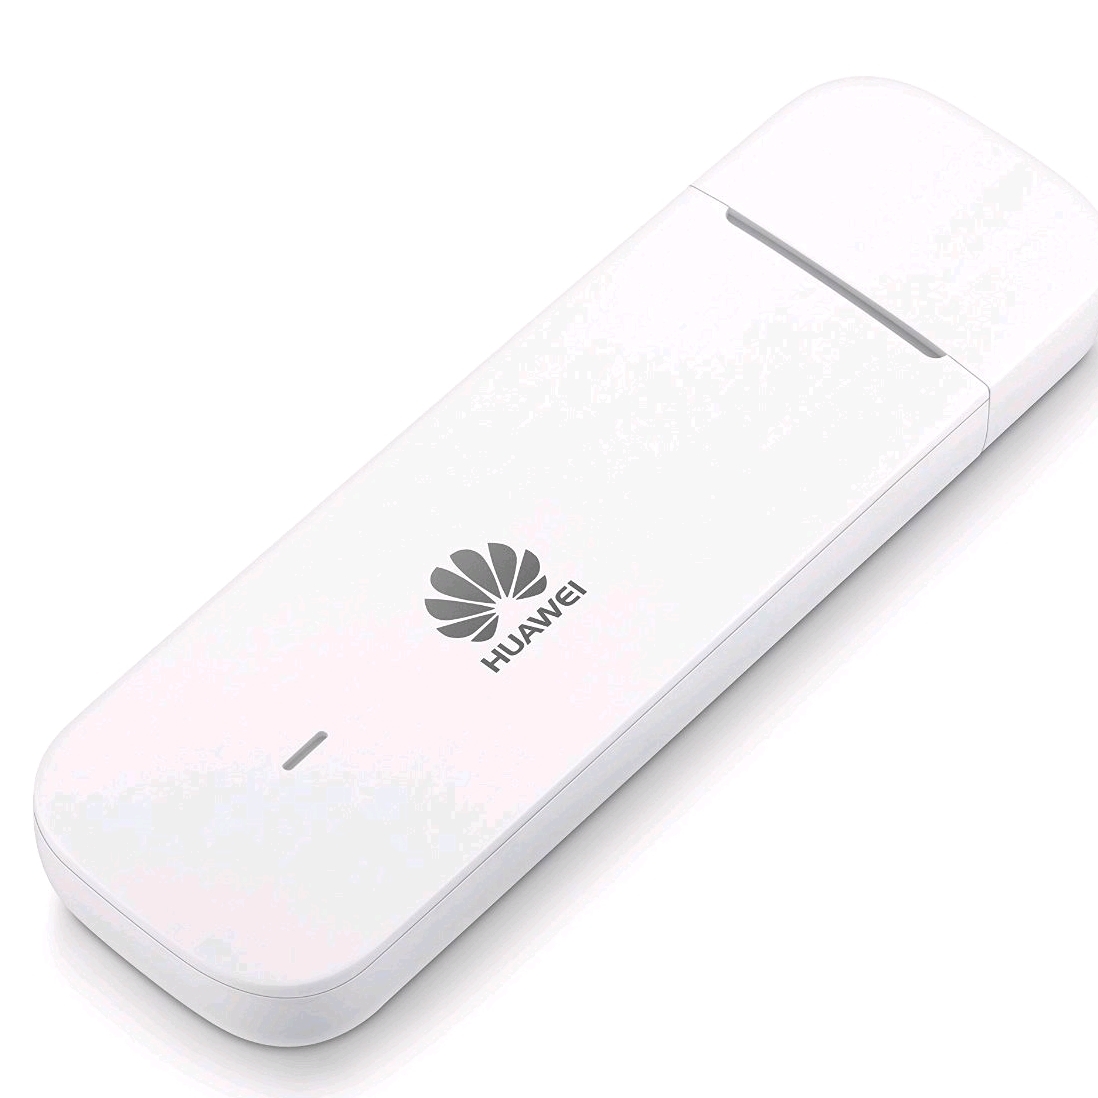 Usb 4G Chất Lượng Cao Huawei E3372 Chính Hãng Giá Rẻ